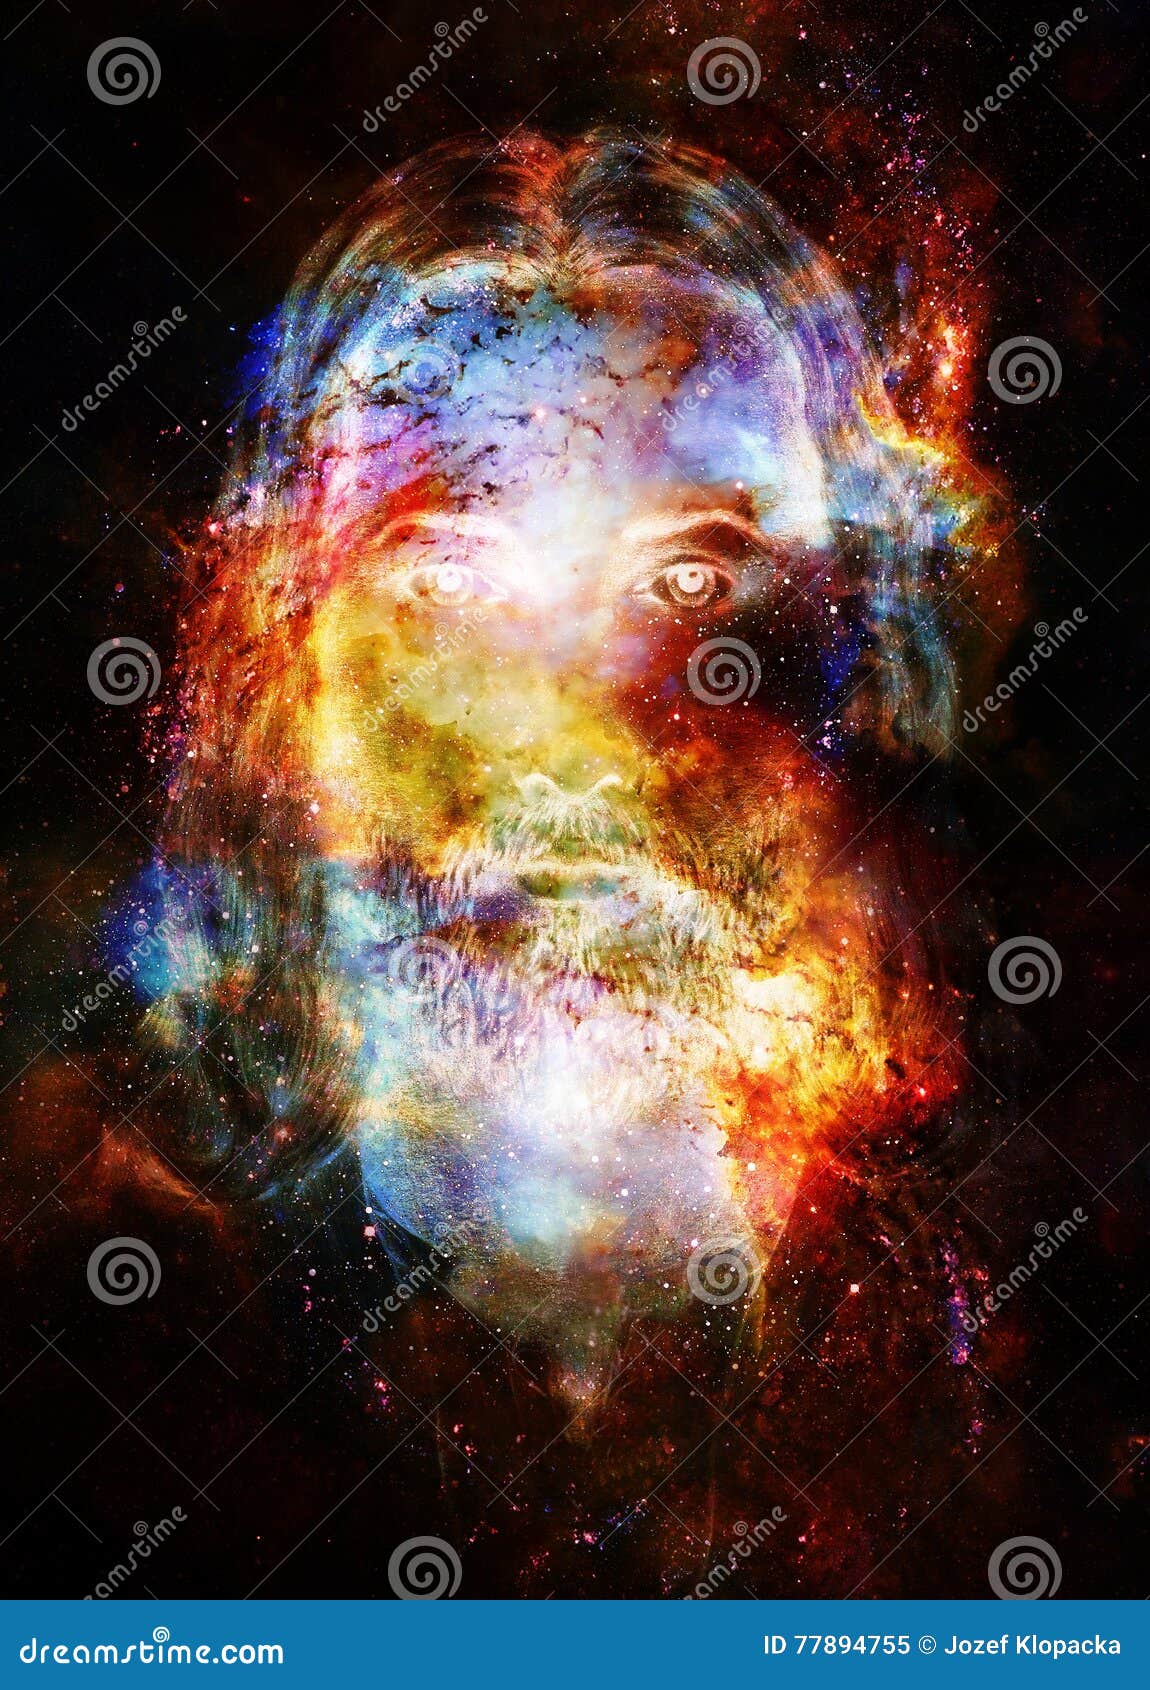 jesus nebula